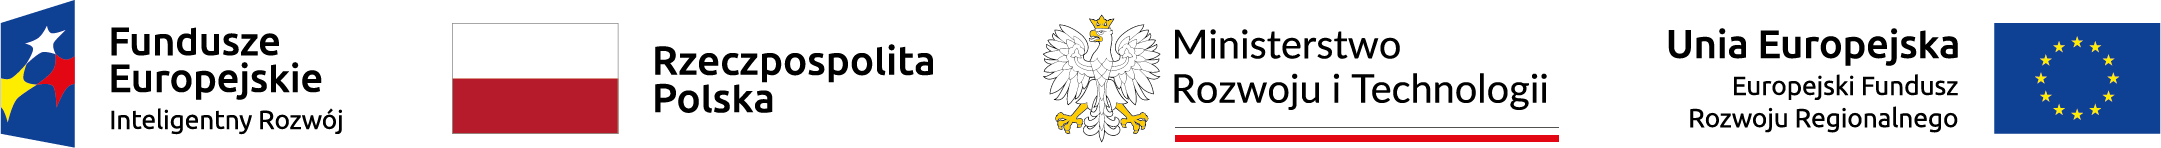 Logotypy Funduszy Europejskich, Polski, UE oraz MRiT